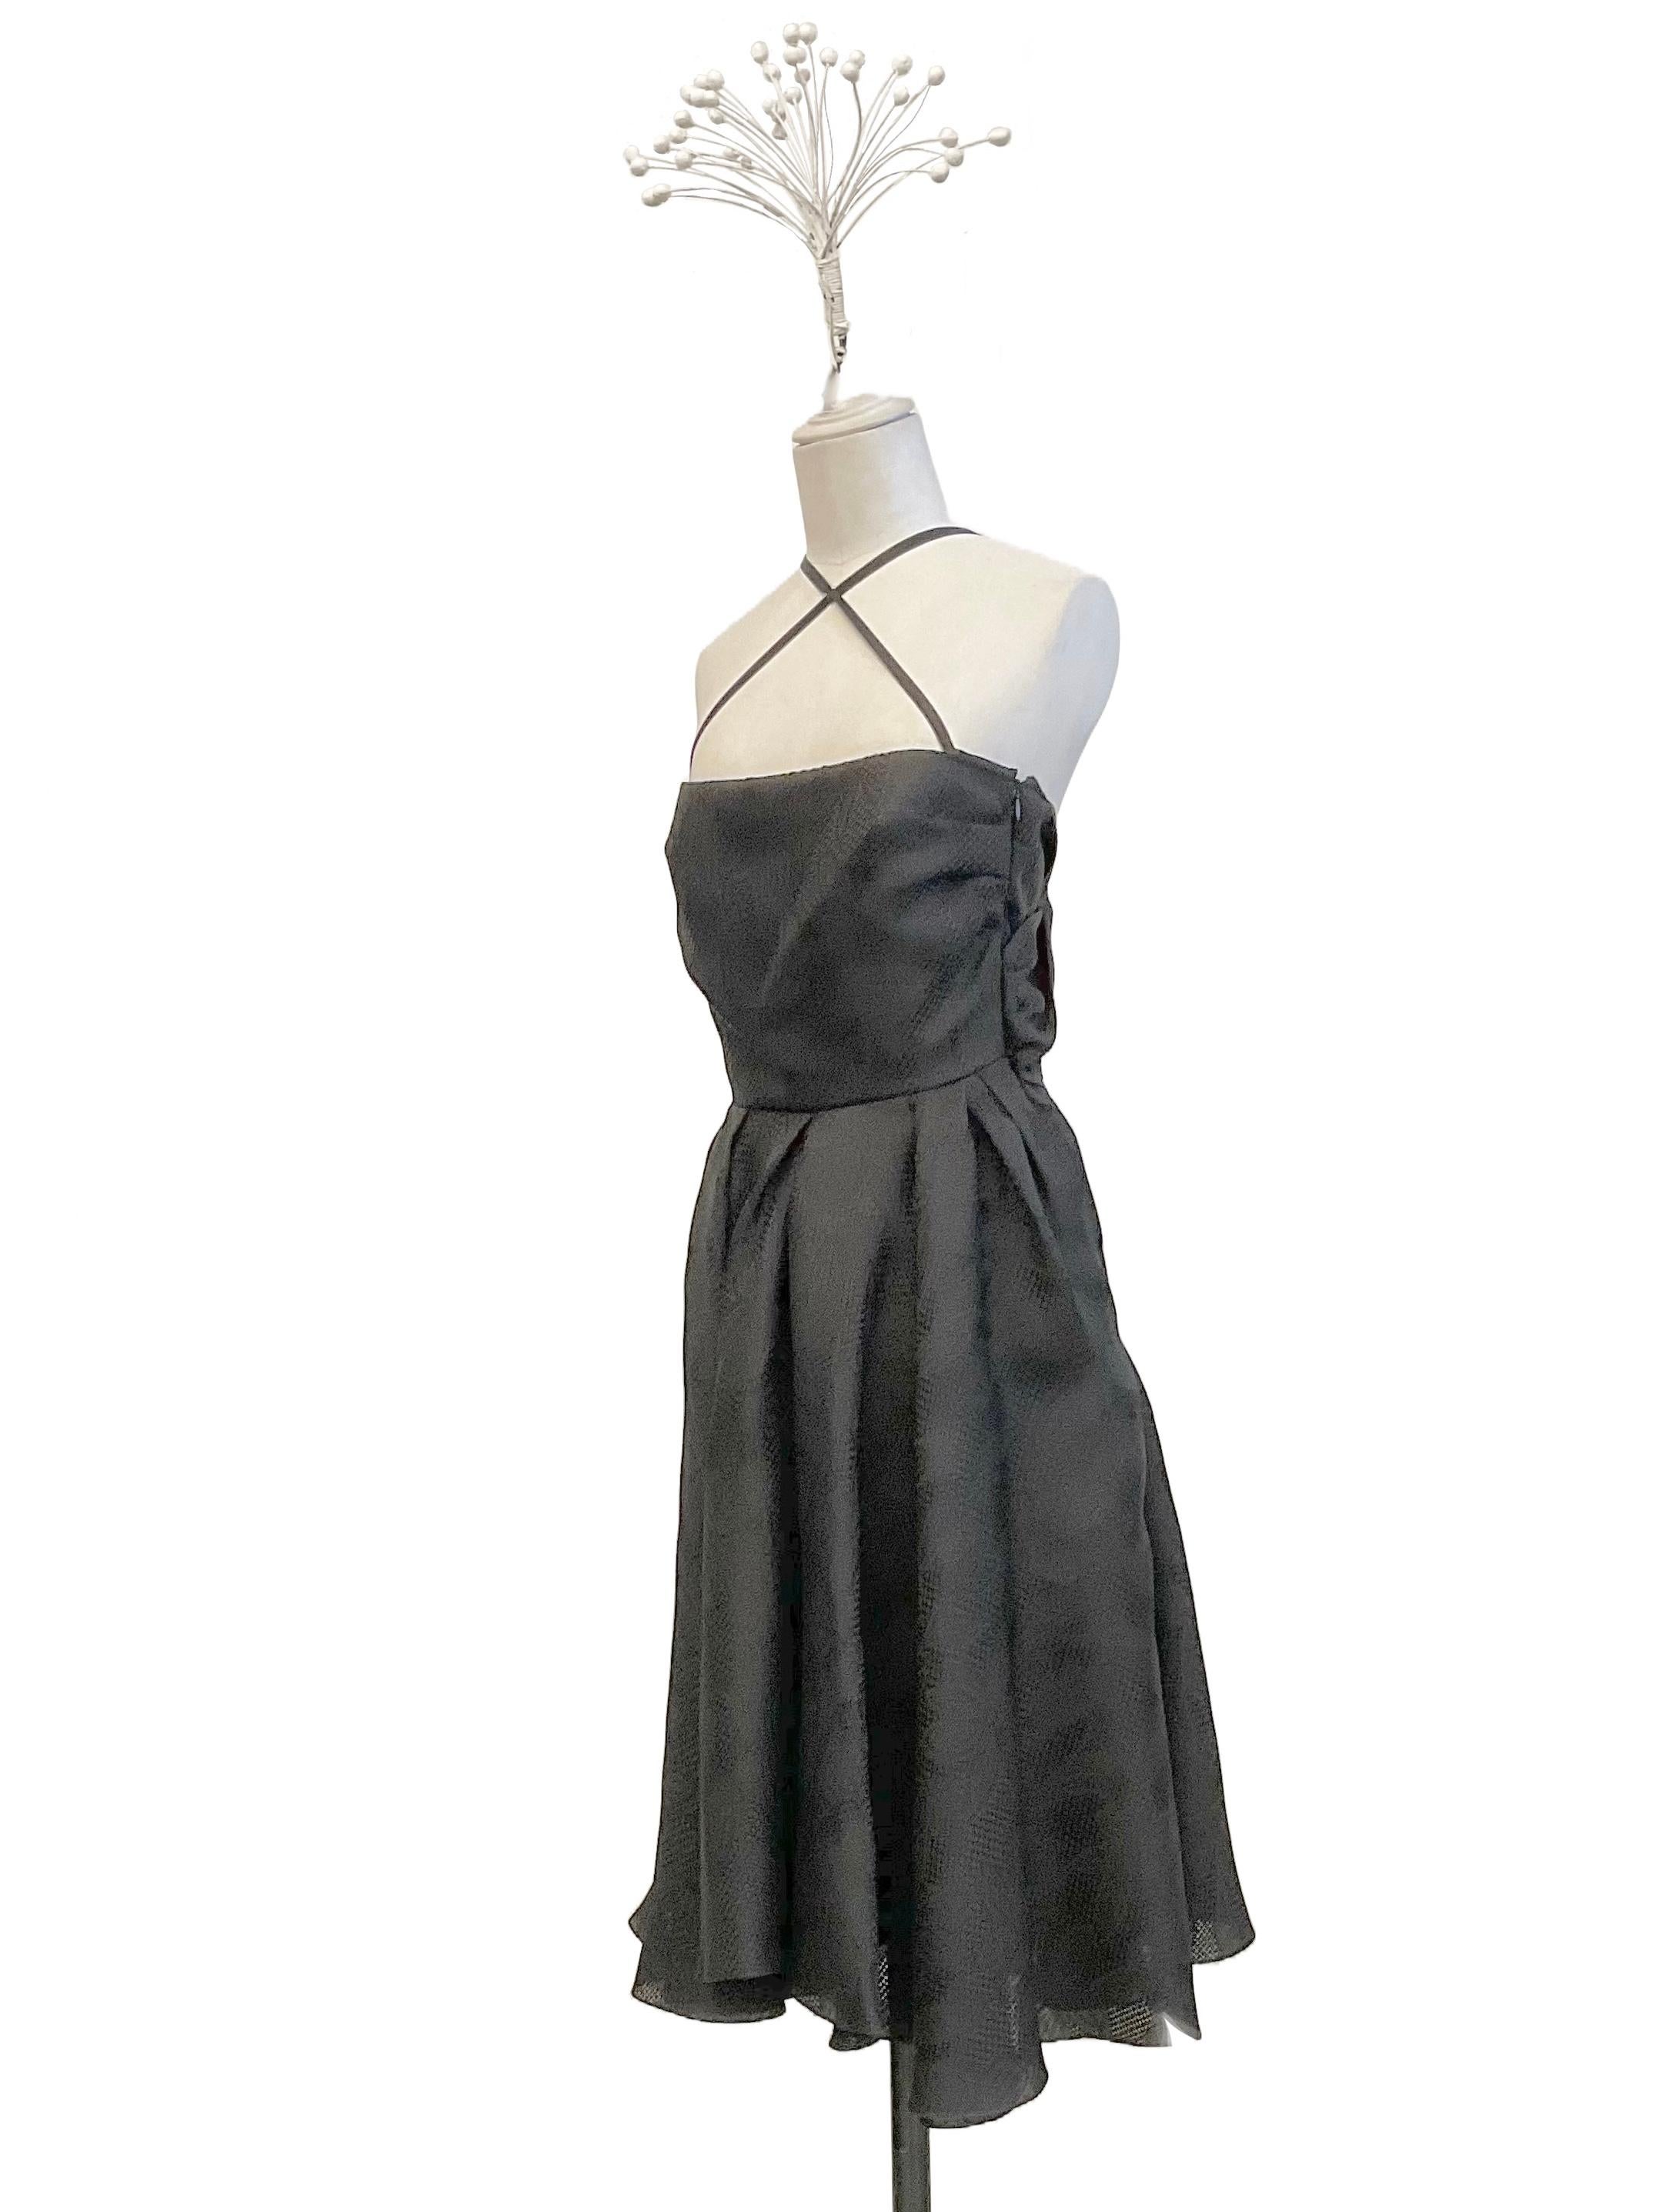 Robe de cocktail noire de John Galliano de la collection Prêt-à-porter printemps-été 2008. 
Le tissu de la robe est un jacquard 100 % soie avec des motifs floraux. Le modèle présente une encolure bustier avec de fins rubans de satin qui se croisent